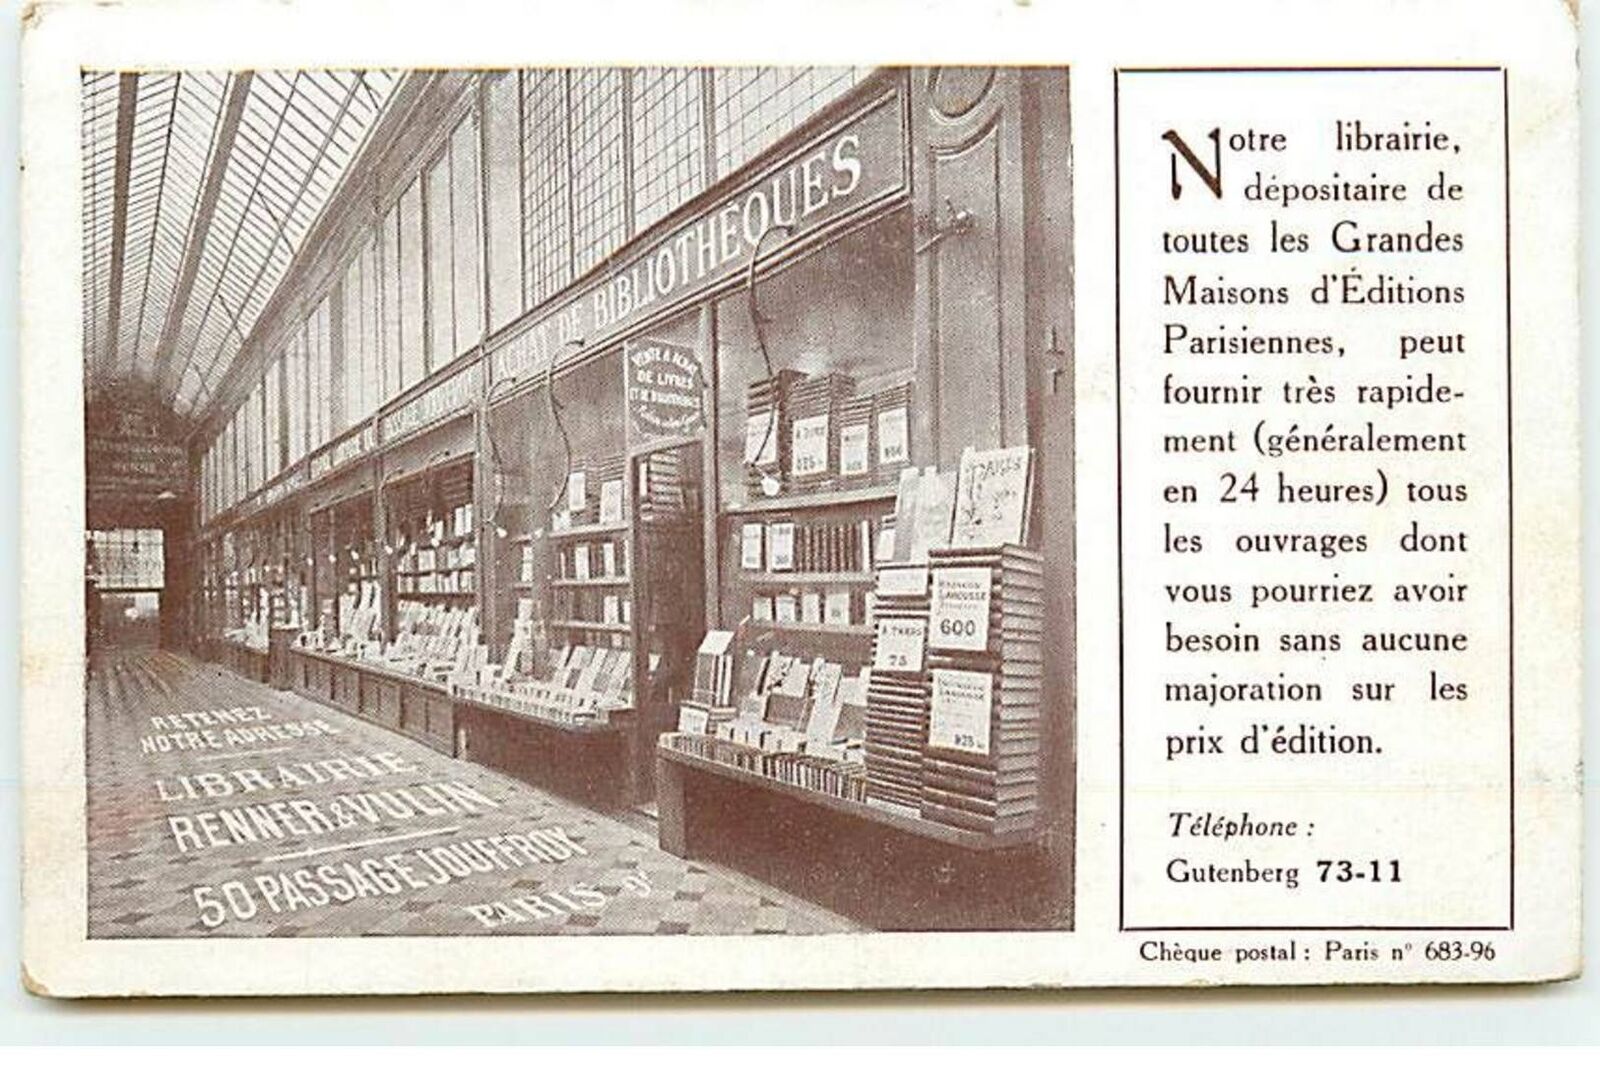 PARIS IX - Renner & Vulin Bookstore - 50 Passage Jouffroy